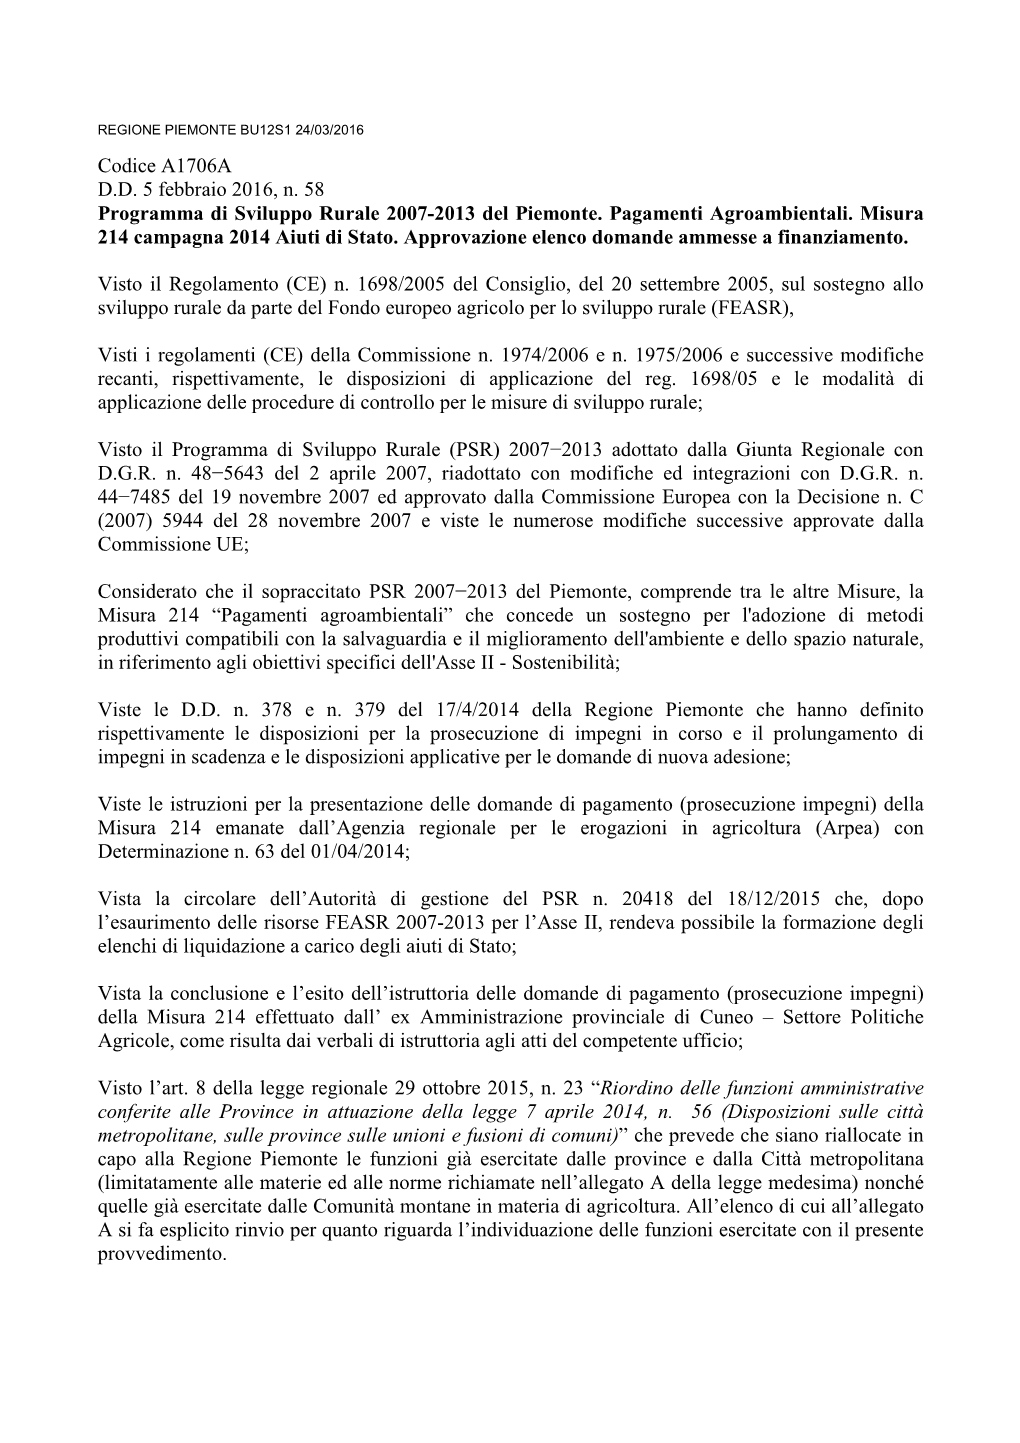 Codice A1706A D.D. 5 Febbraio 2016, N. 58 Programma Di Sviluppo Rurale 2007-2013 Del Piemonte